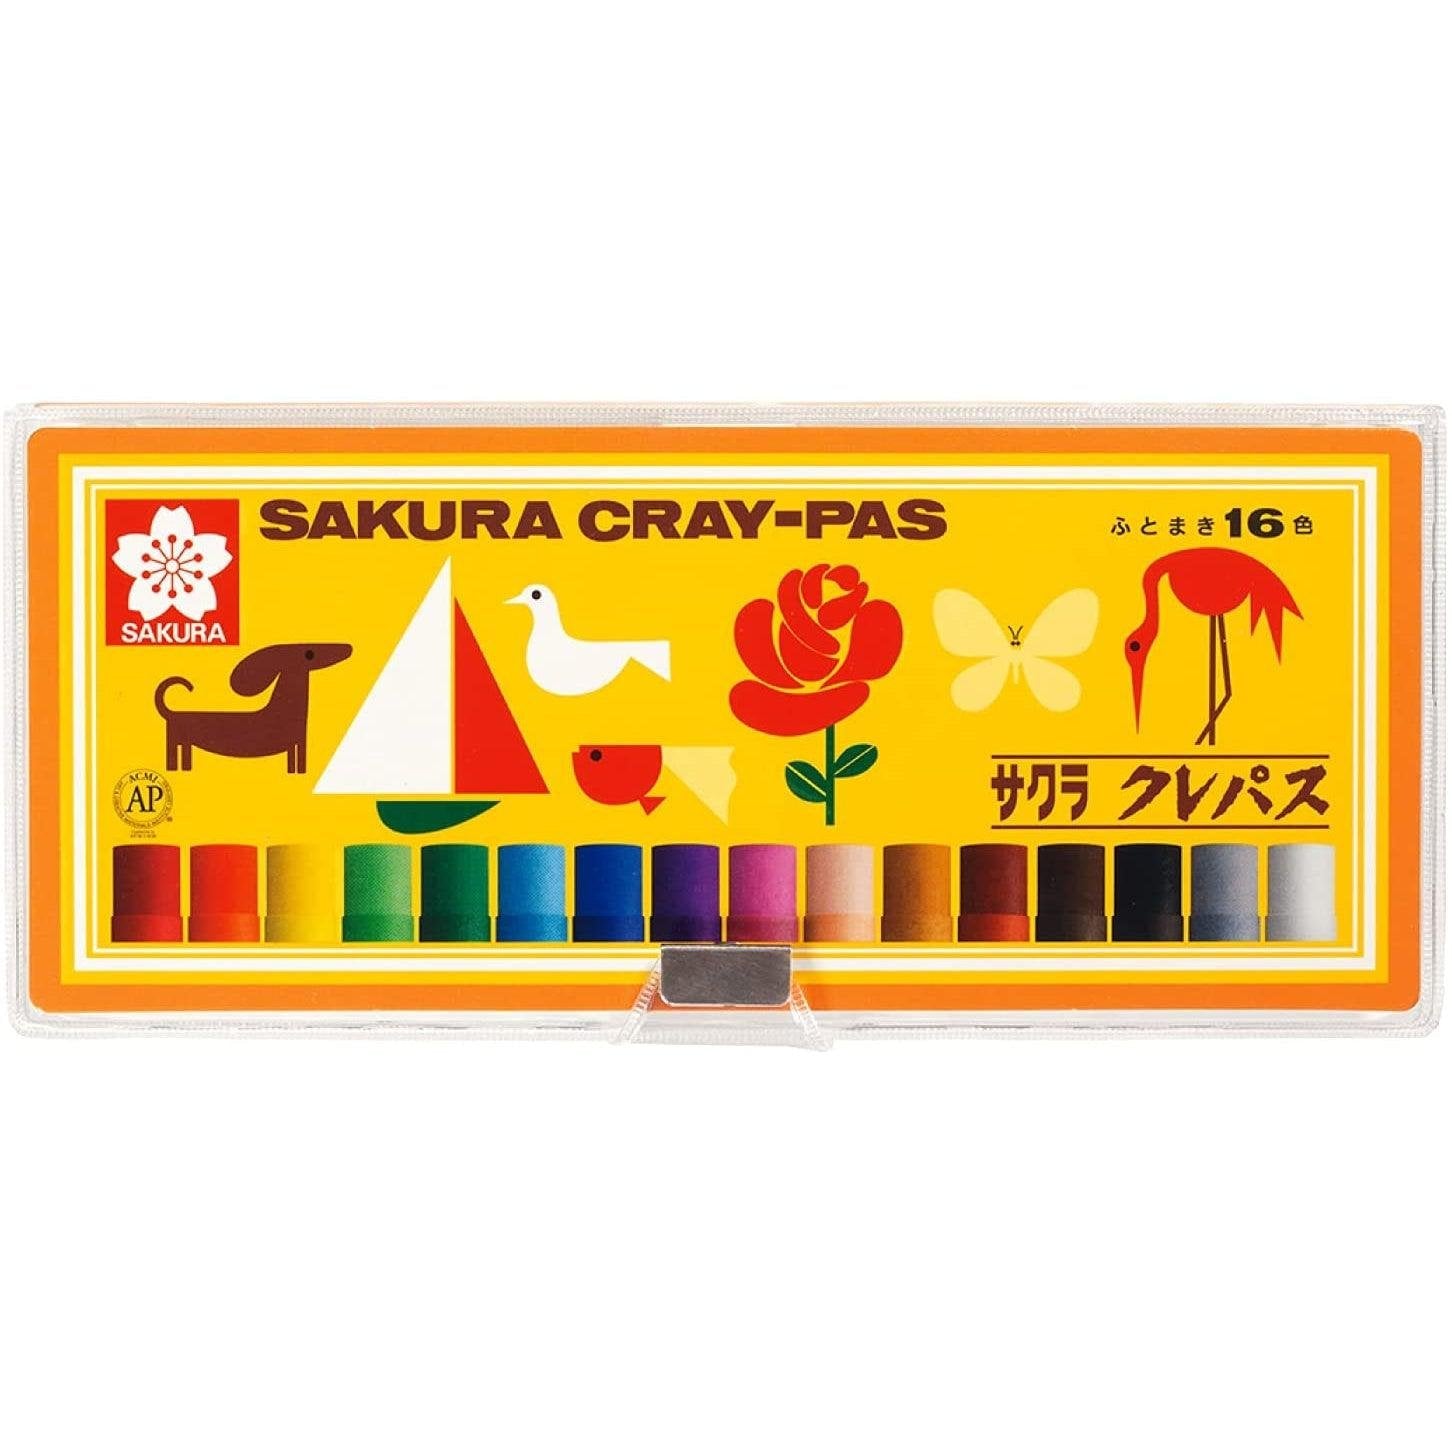 P-1-SKRA-CRAYPS-LP16S-Sakura Cray Pas Oil Pastels 16 Colors LP16S.jpg